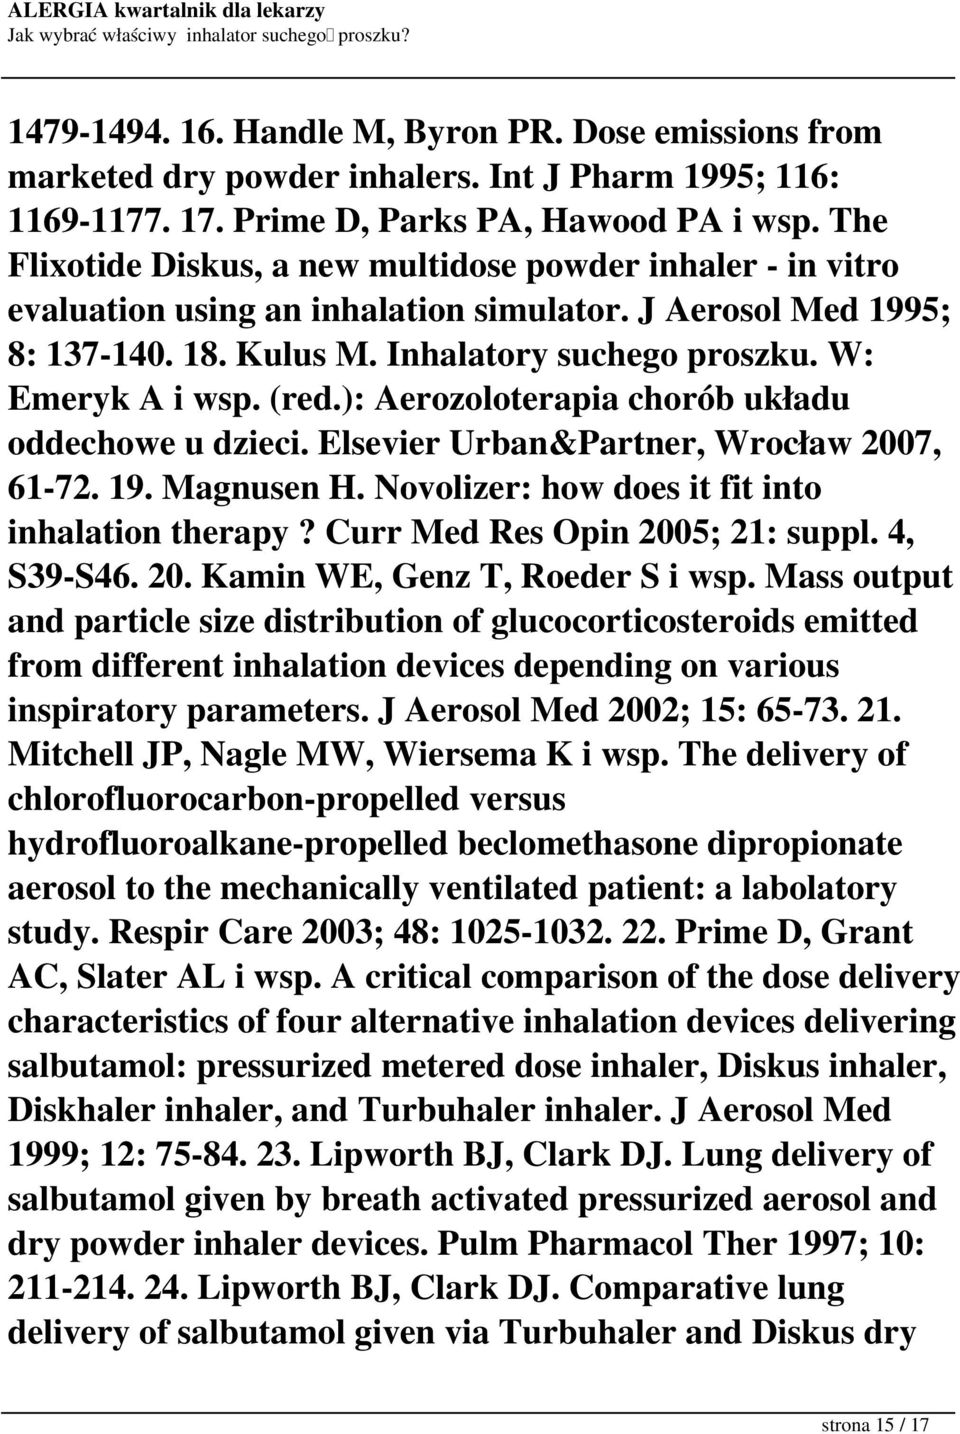 (red.): Aerozoloterapia chorób układu oddechowe u dzieci. Elsevier Urban&Partner, Wrocław 2007, 61-72. 19. Magnusen H. Novolizer: how does it fit into inhalation therapy?